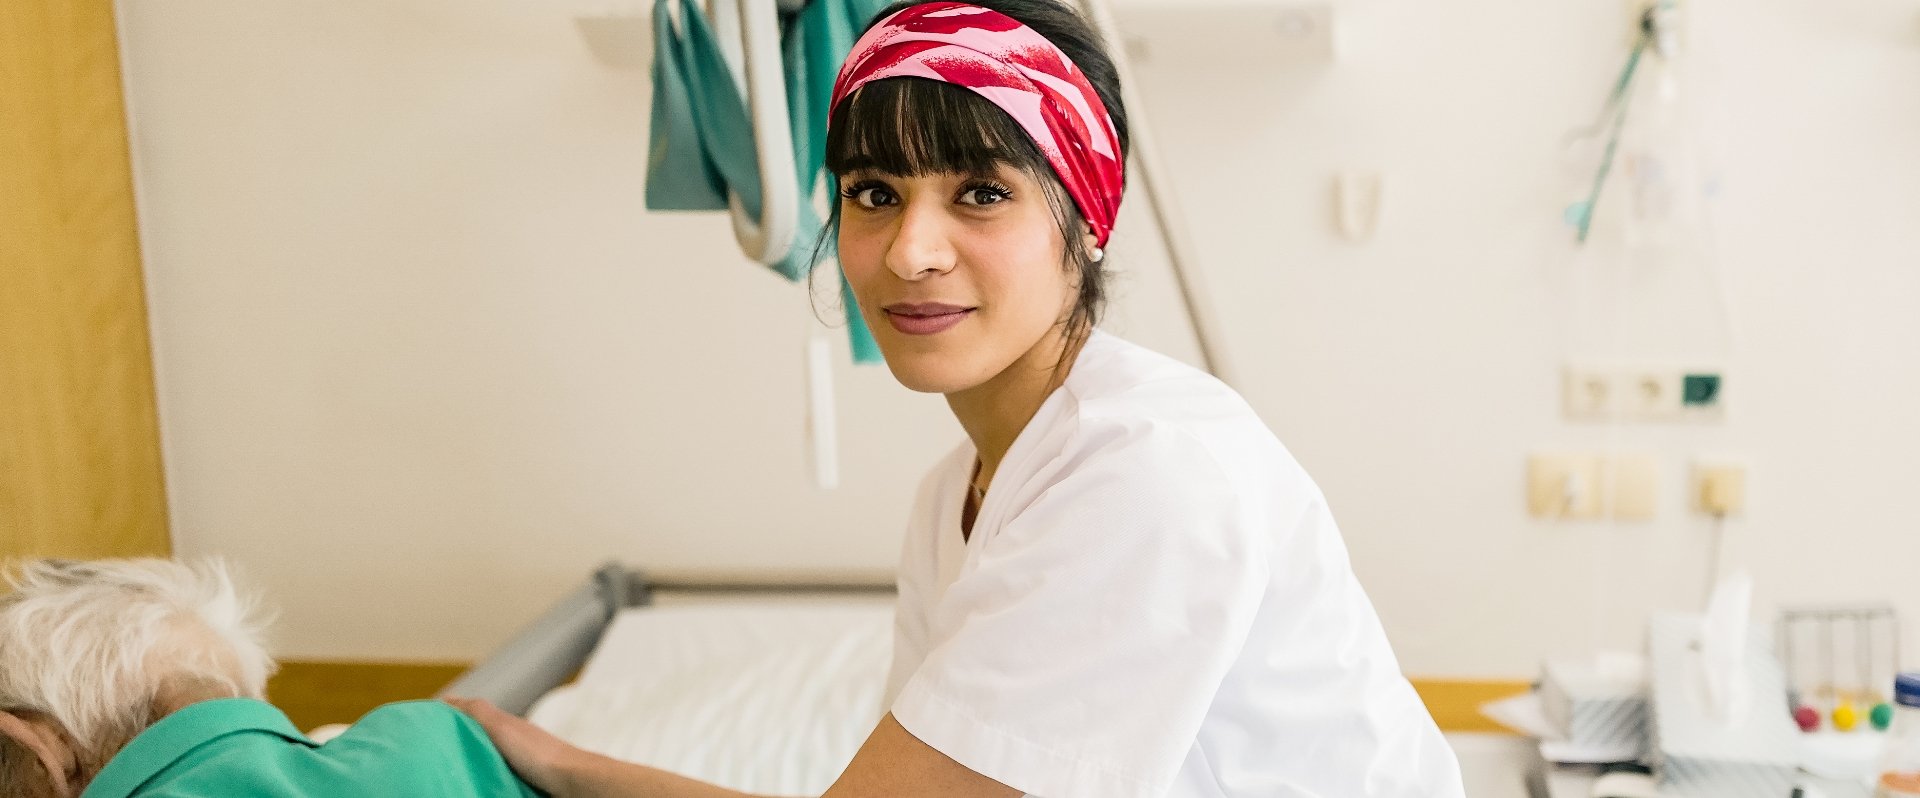 Pflegerin mit rotem Tuch auf dem Kopf im Patientenzimmer